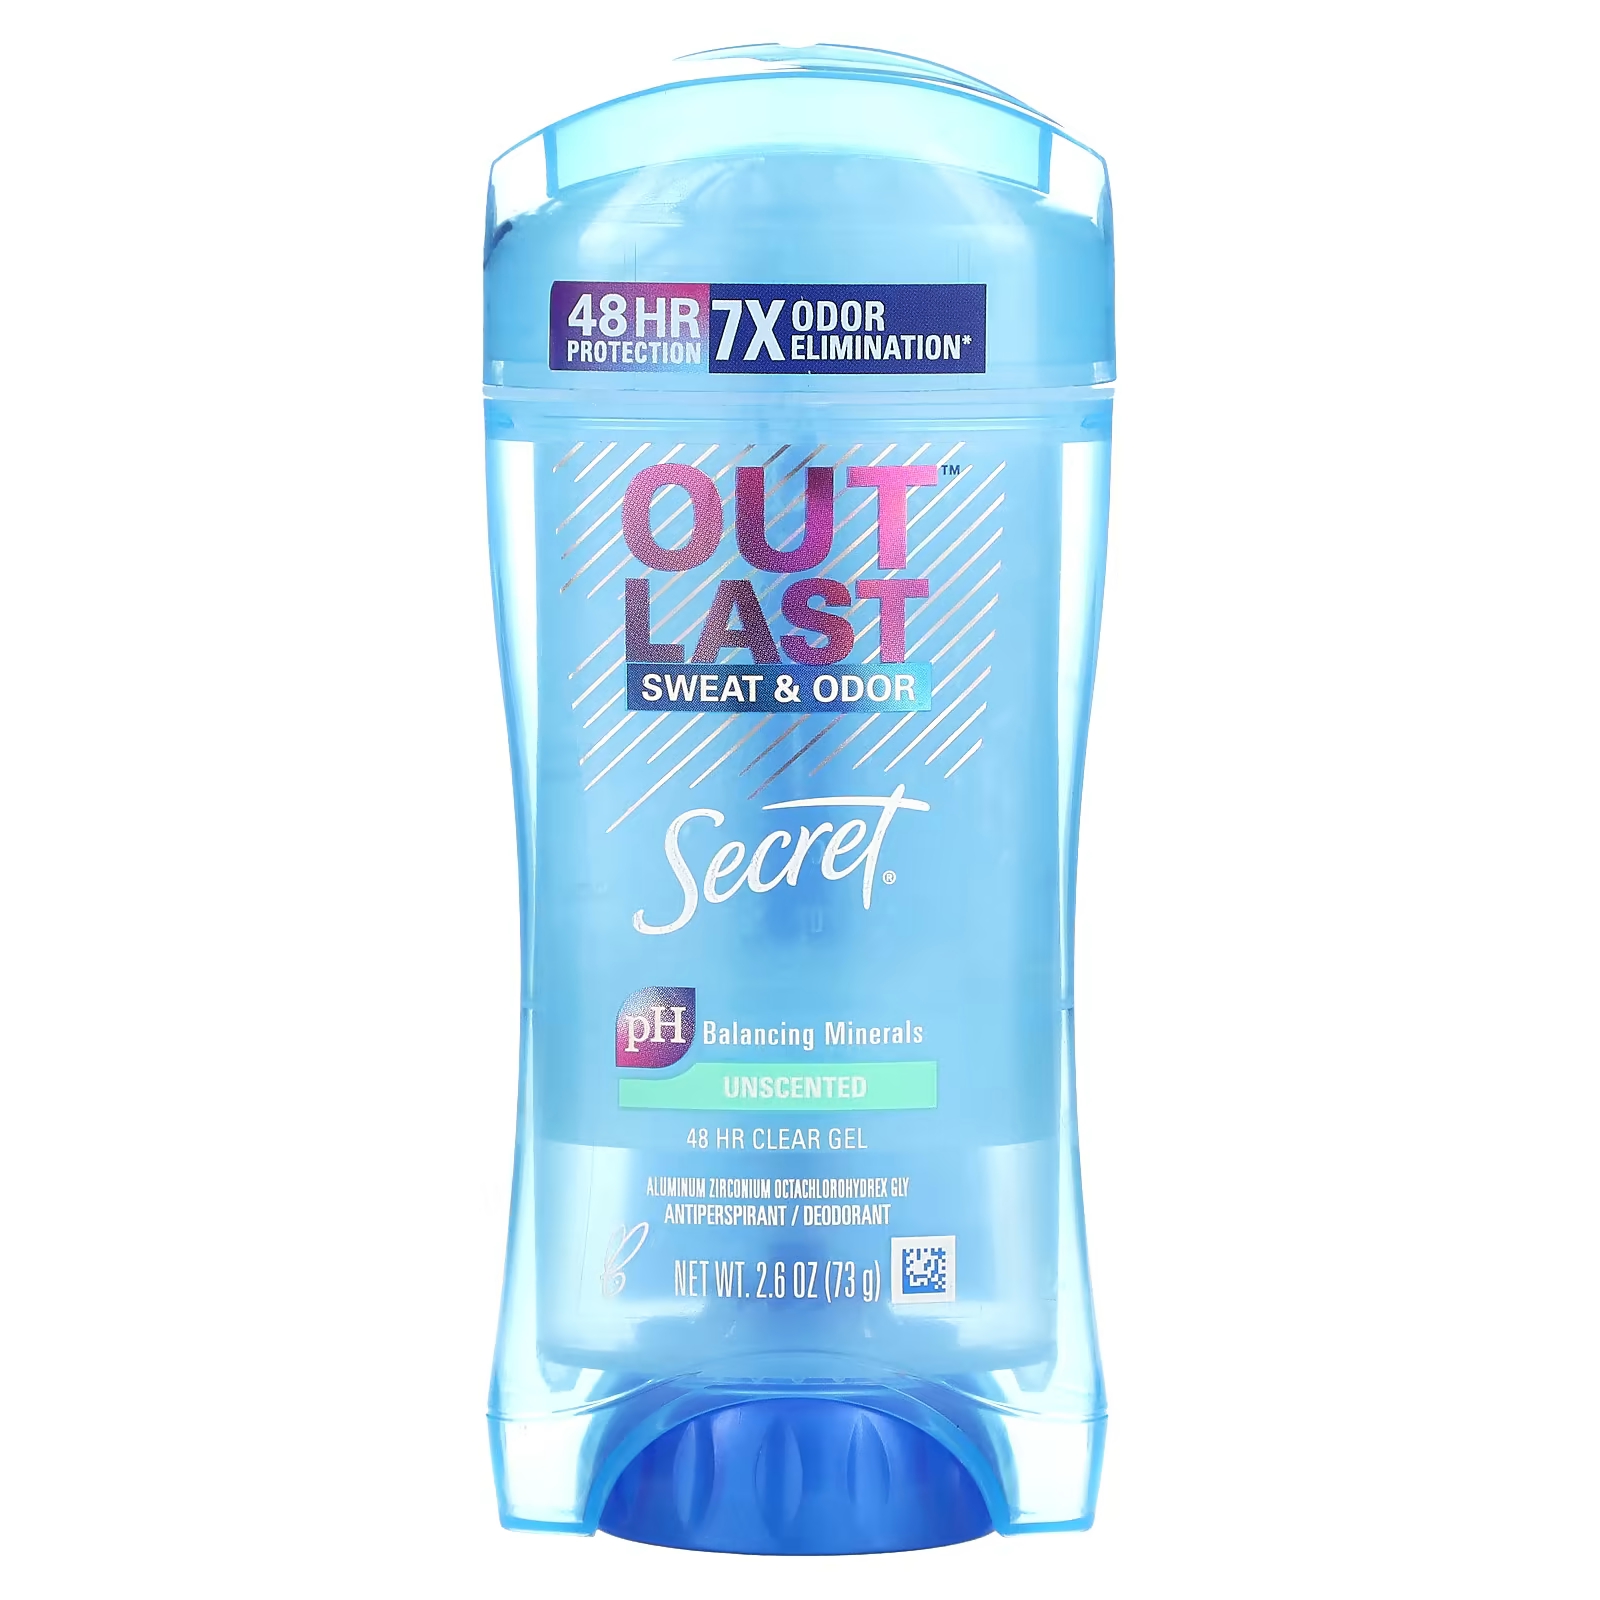 Дезодорант-антиперспирант Secret Outlast Sweat & Odor secret гелевый дезодорант outlast streotypes без запаха 2 штуки по 73 мл